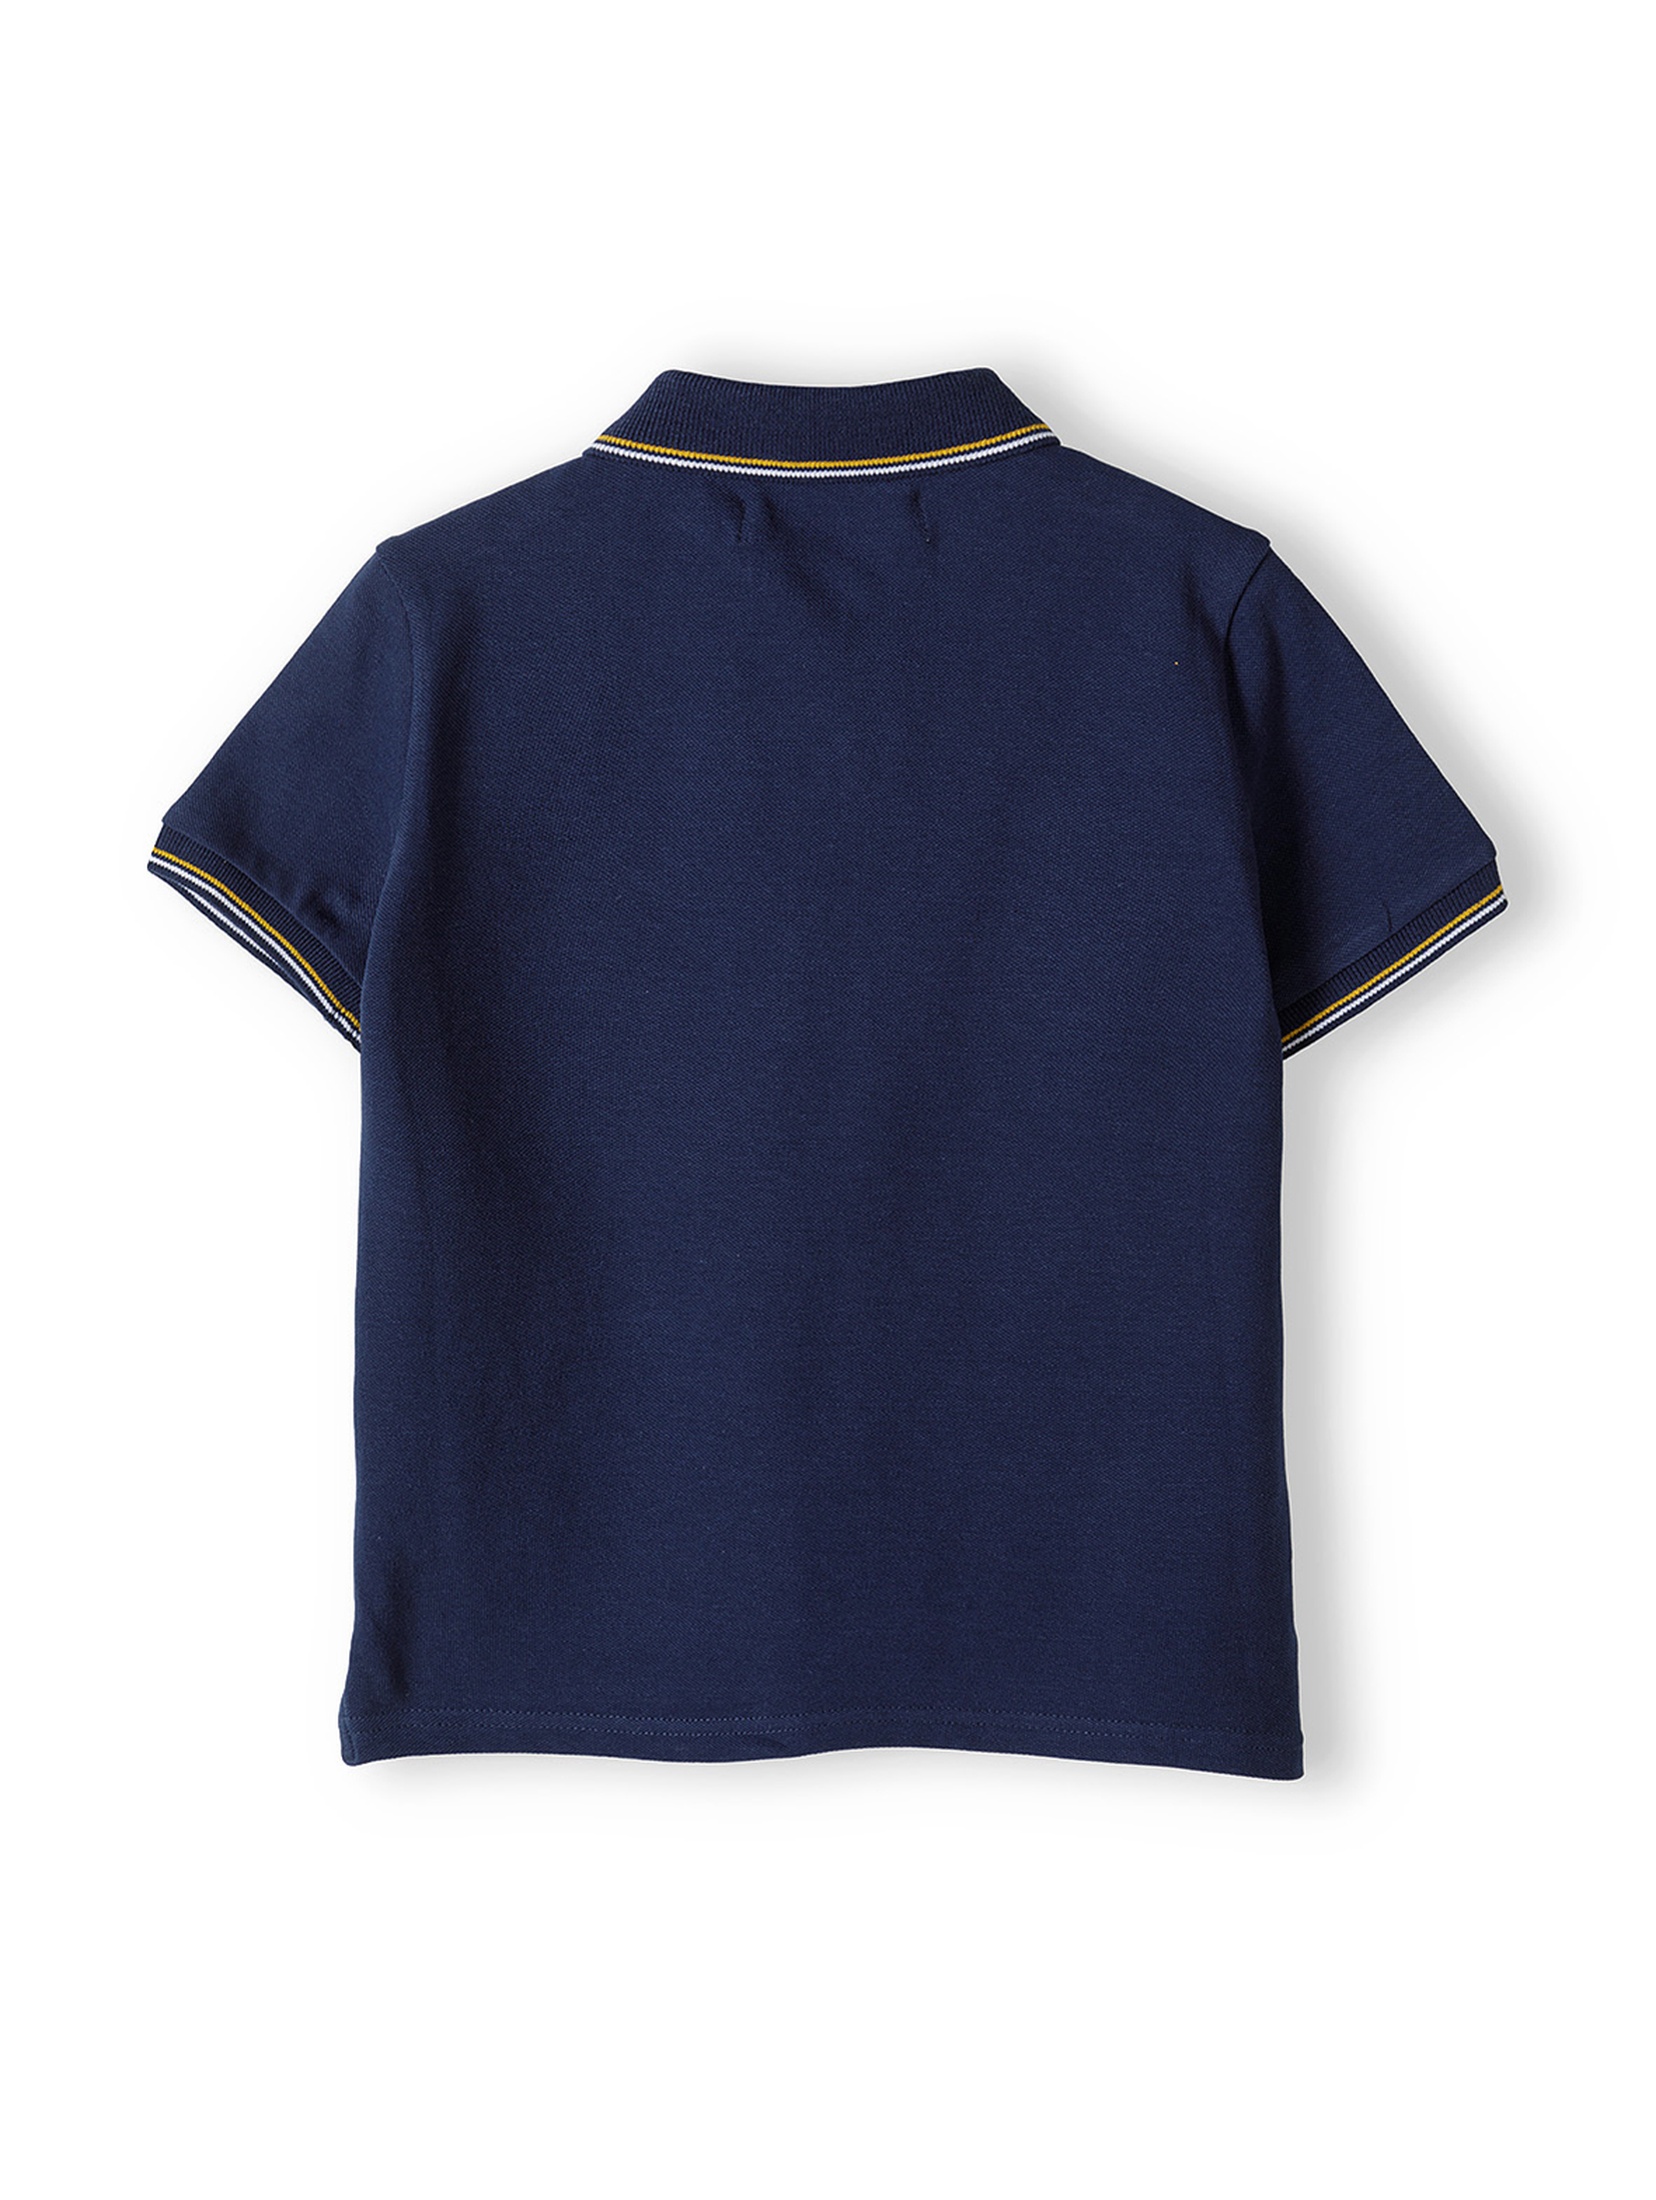 Granatowa koszulka polo dla chłopca z krótkim rękawem